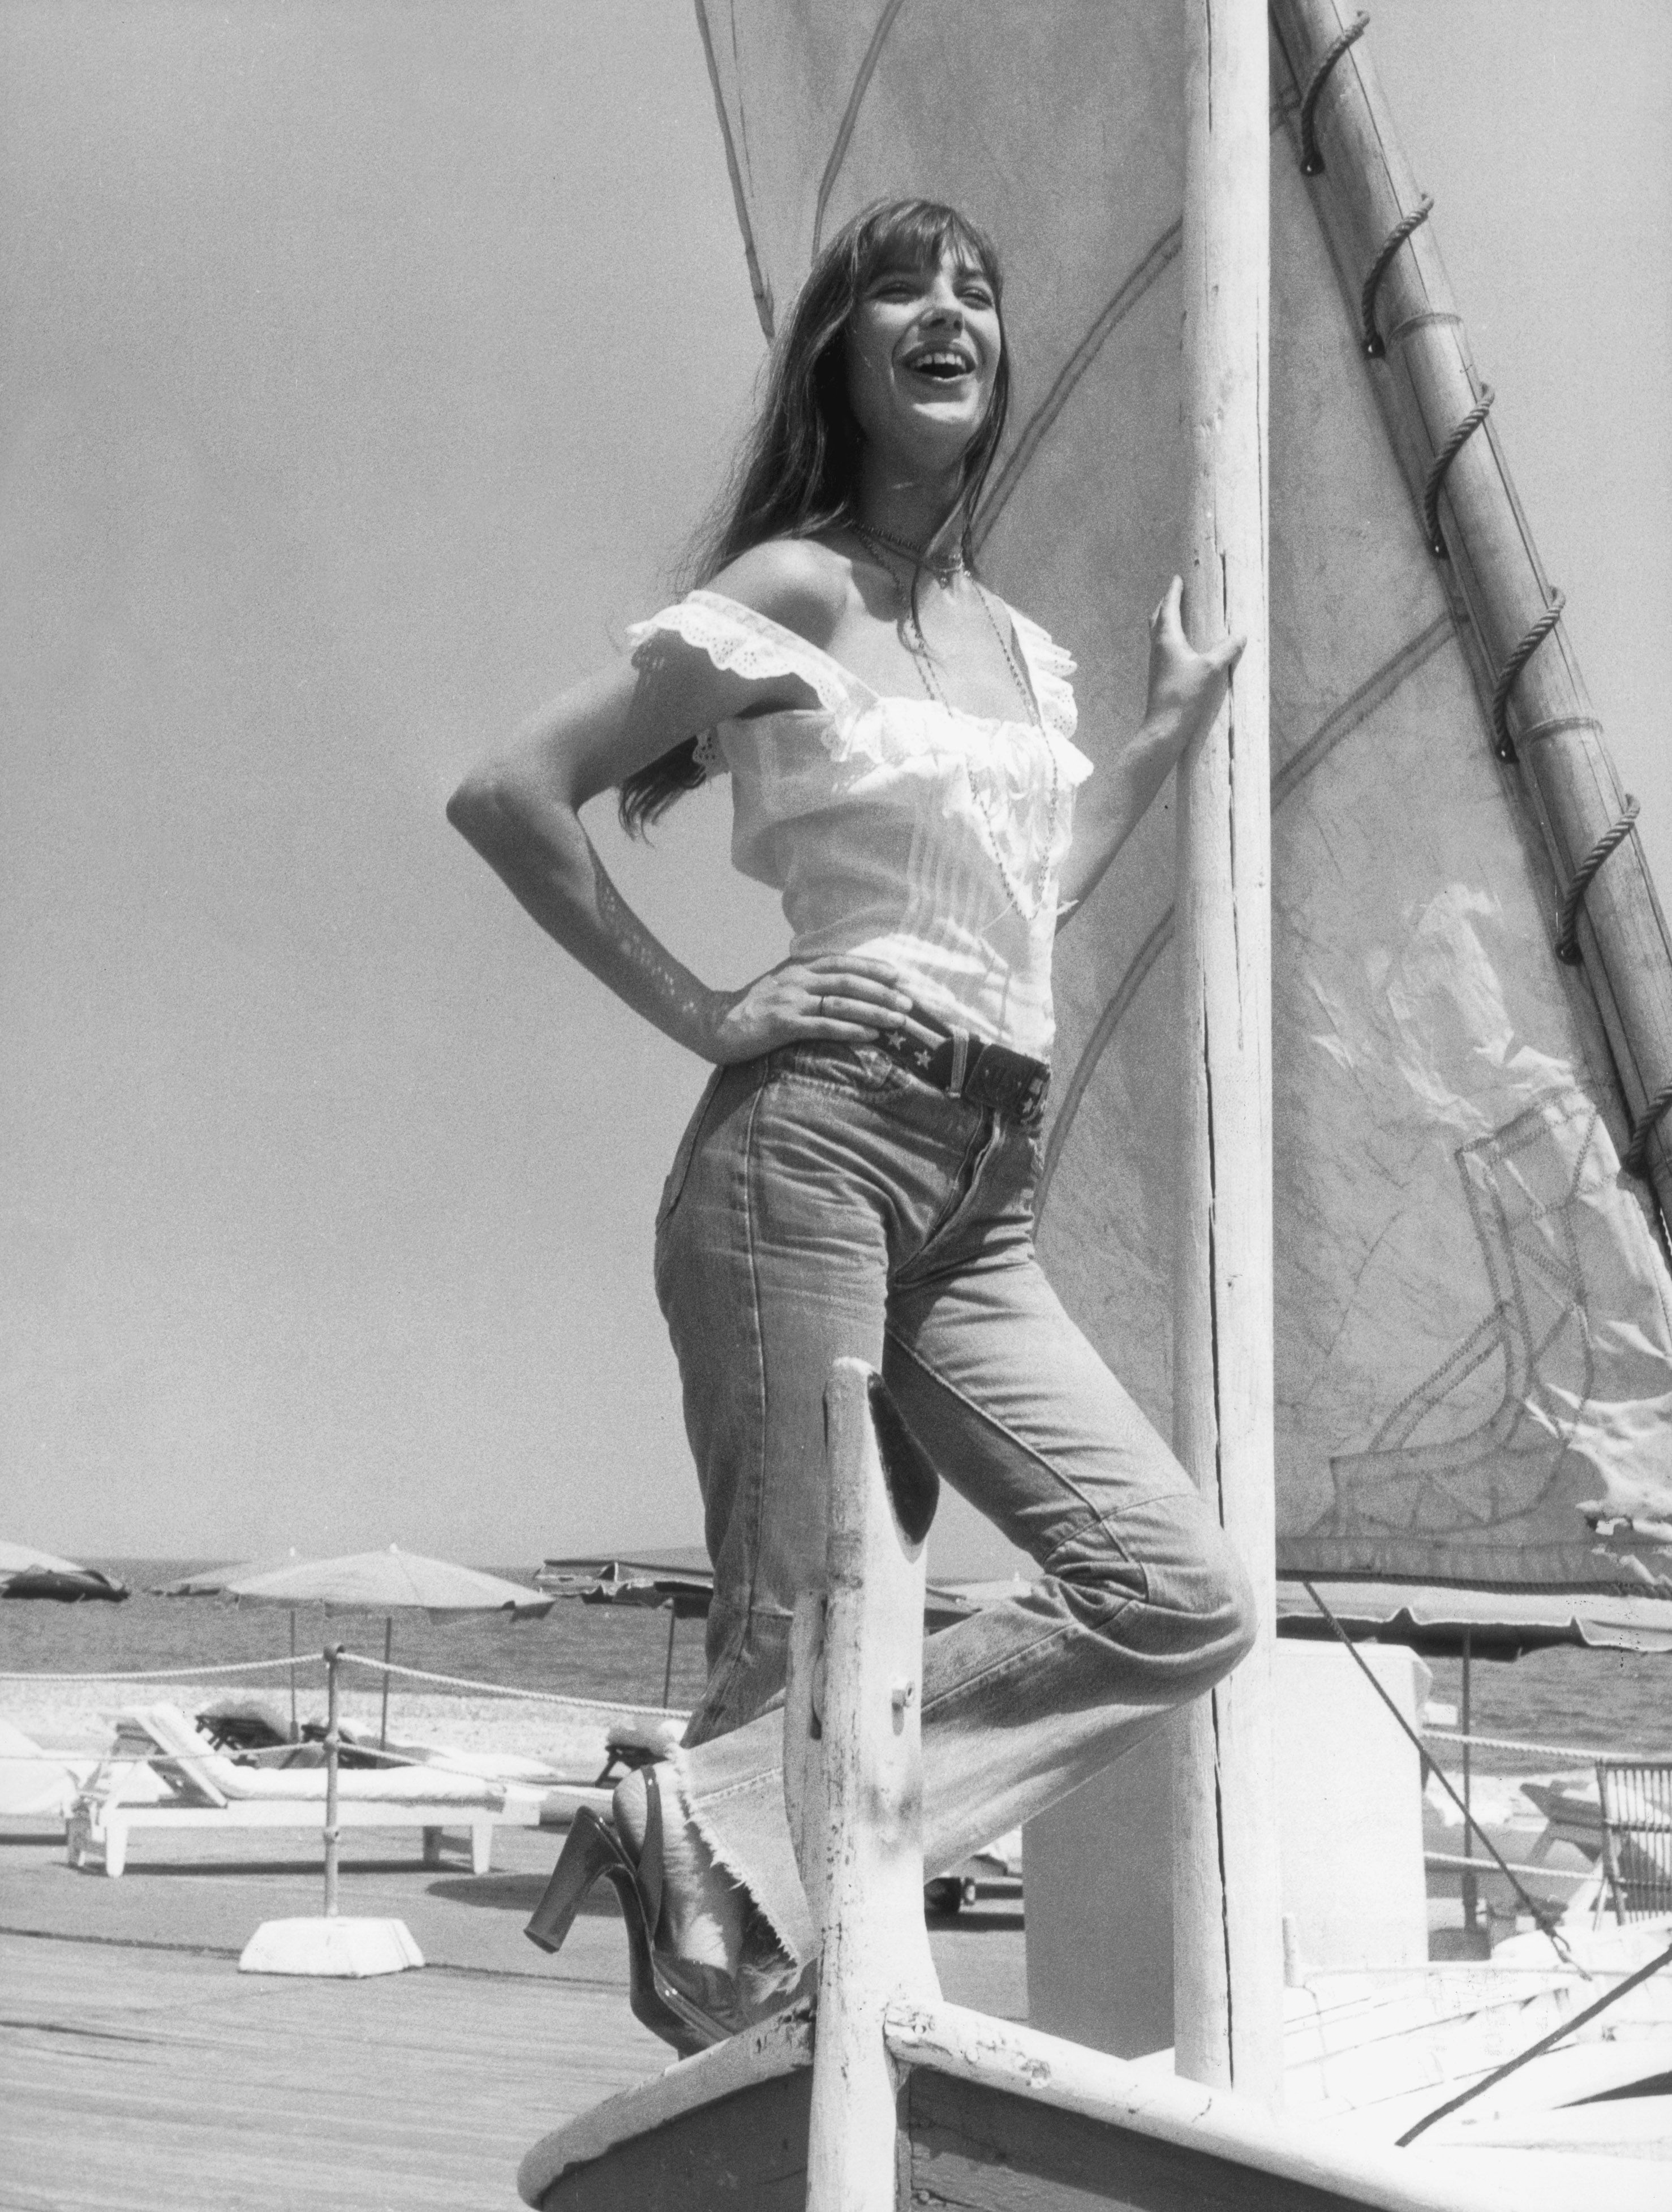 Vintage Photos of Jane Birkin - Jane Birkin Style